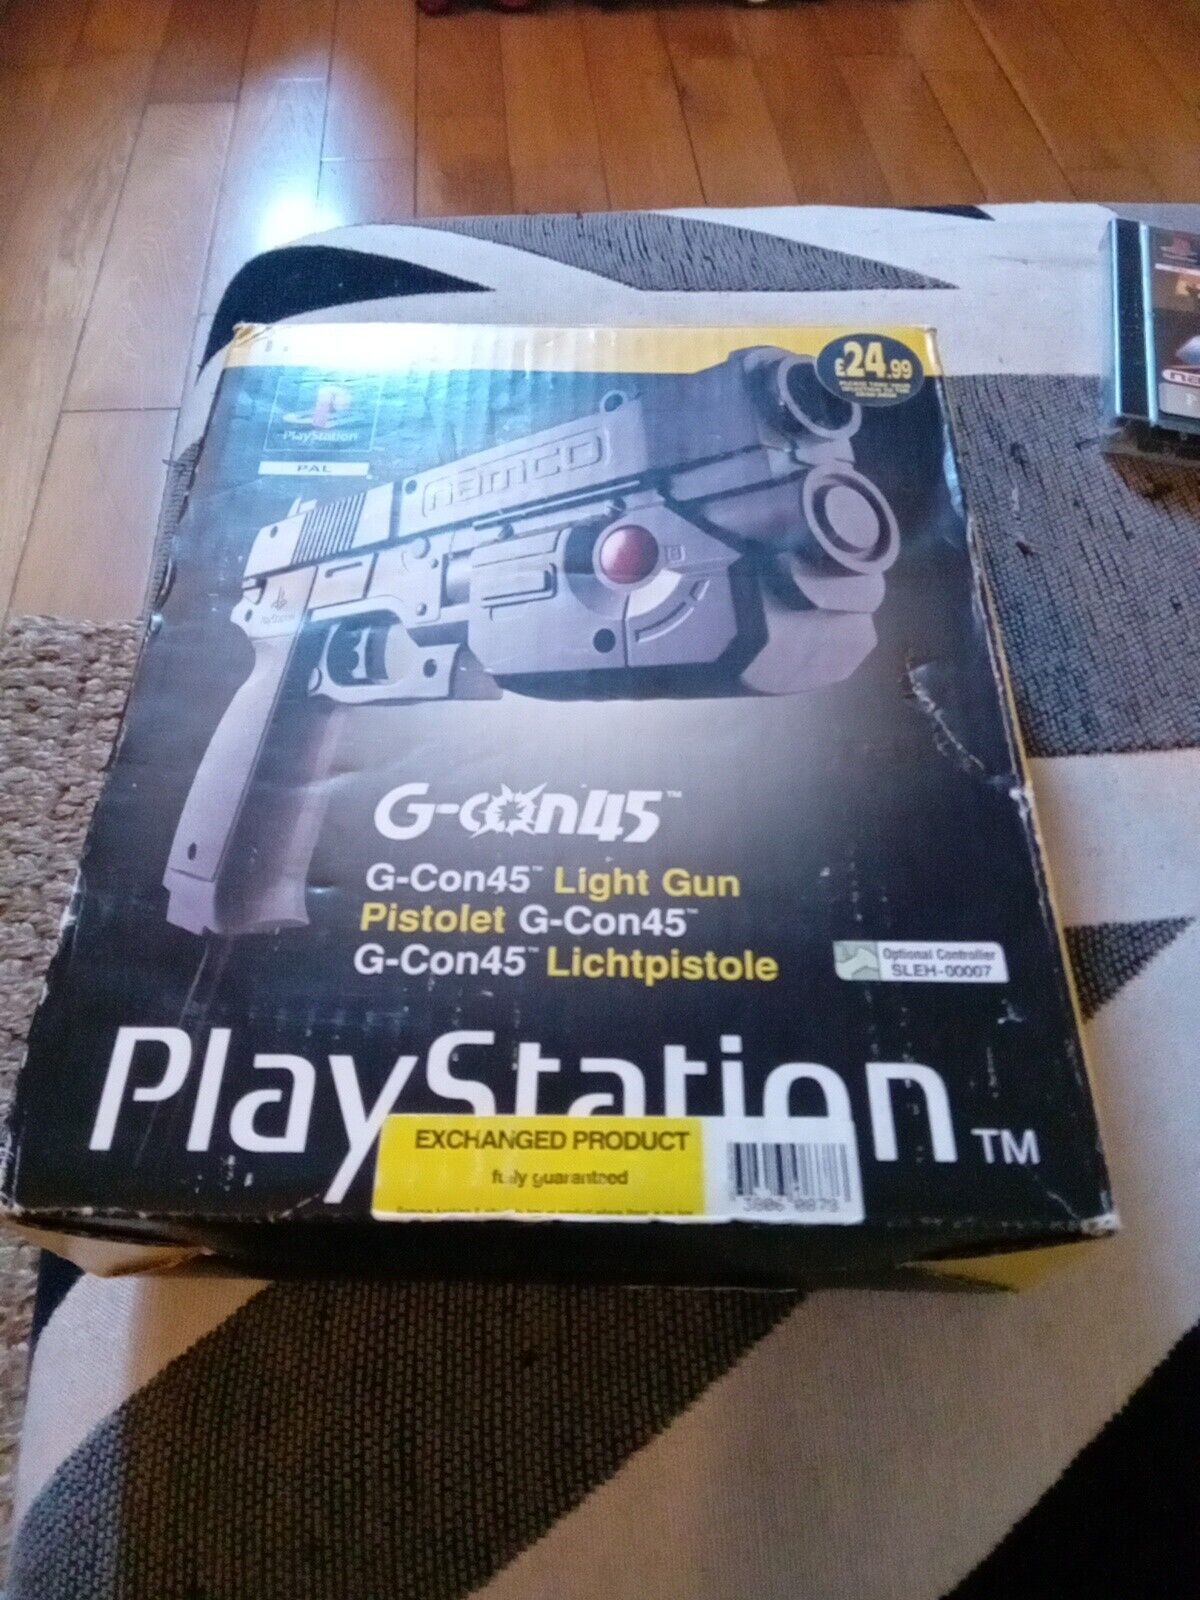 Pistola de luz Playstation 1 Namco G-Con45 en caja con juego de crisis de tiempo PS1 